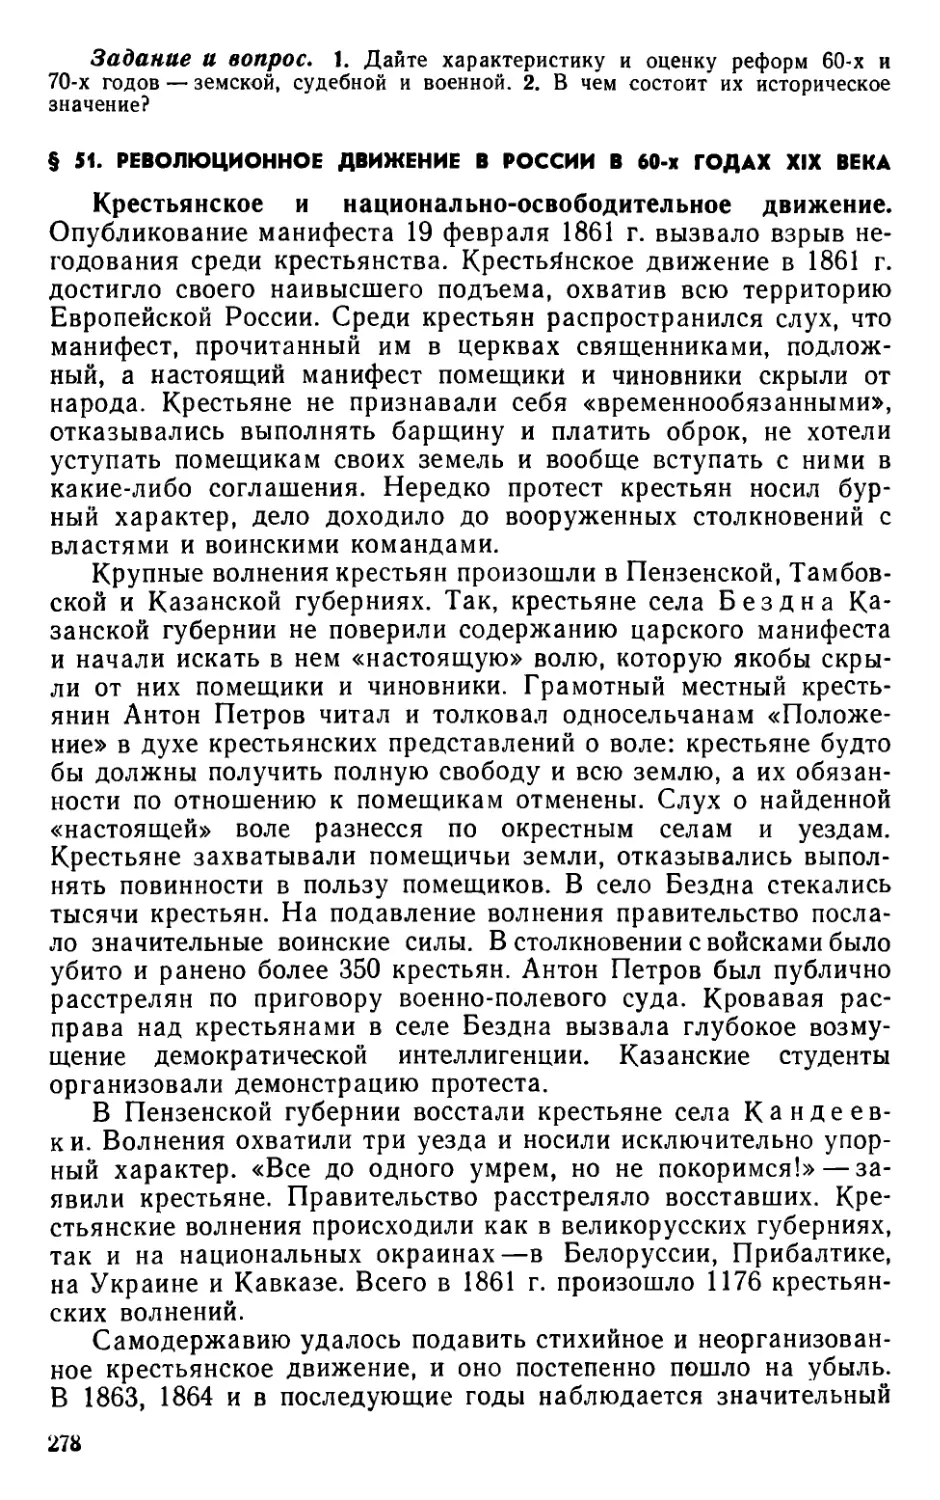 § 51. Революционное движение в России в 60-х годах XIX века